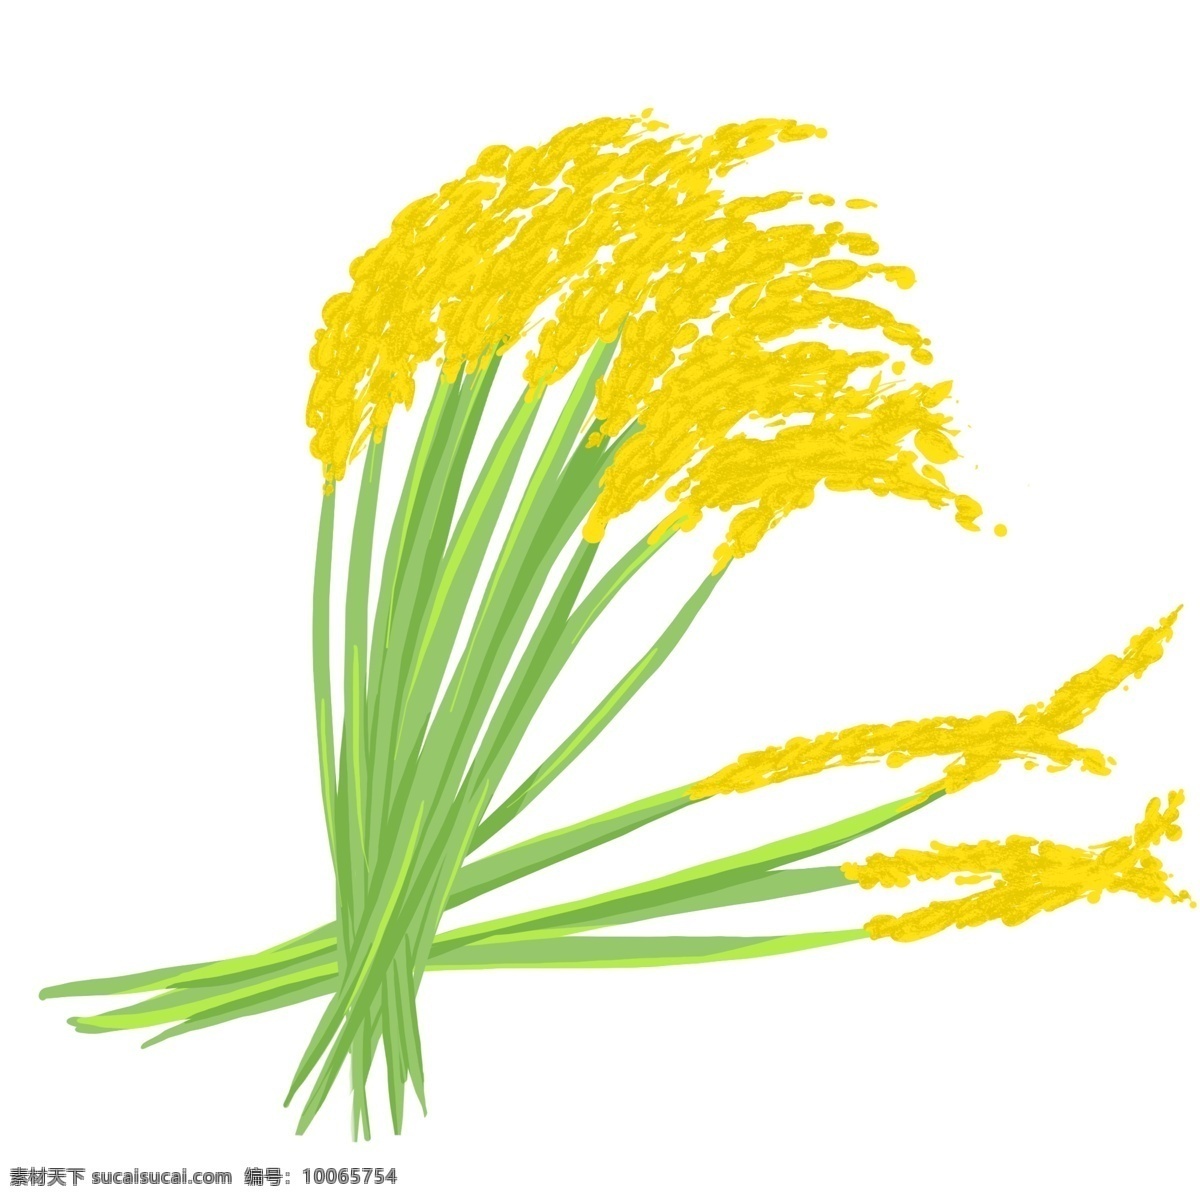 簇 金黄色 稻穗 水稻 自然 成熟 植物 农业 收获 农作物 种子 秋天 中国 农民 丰收 节